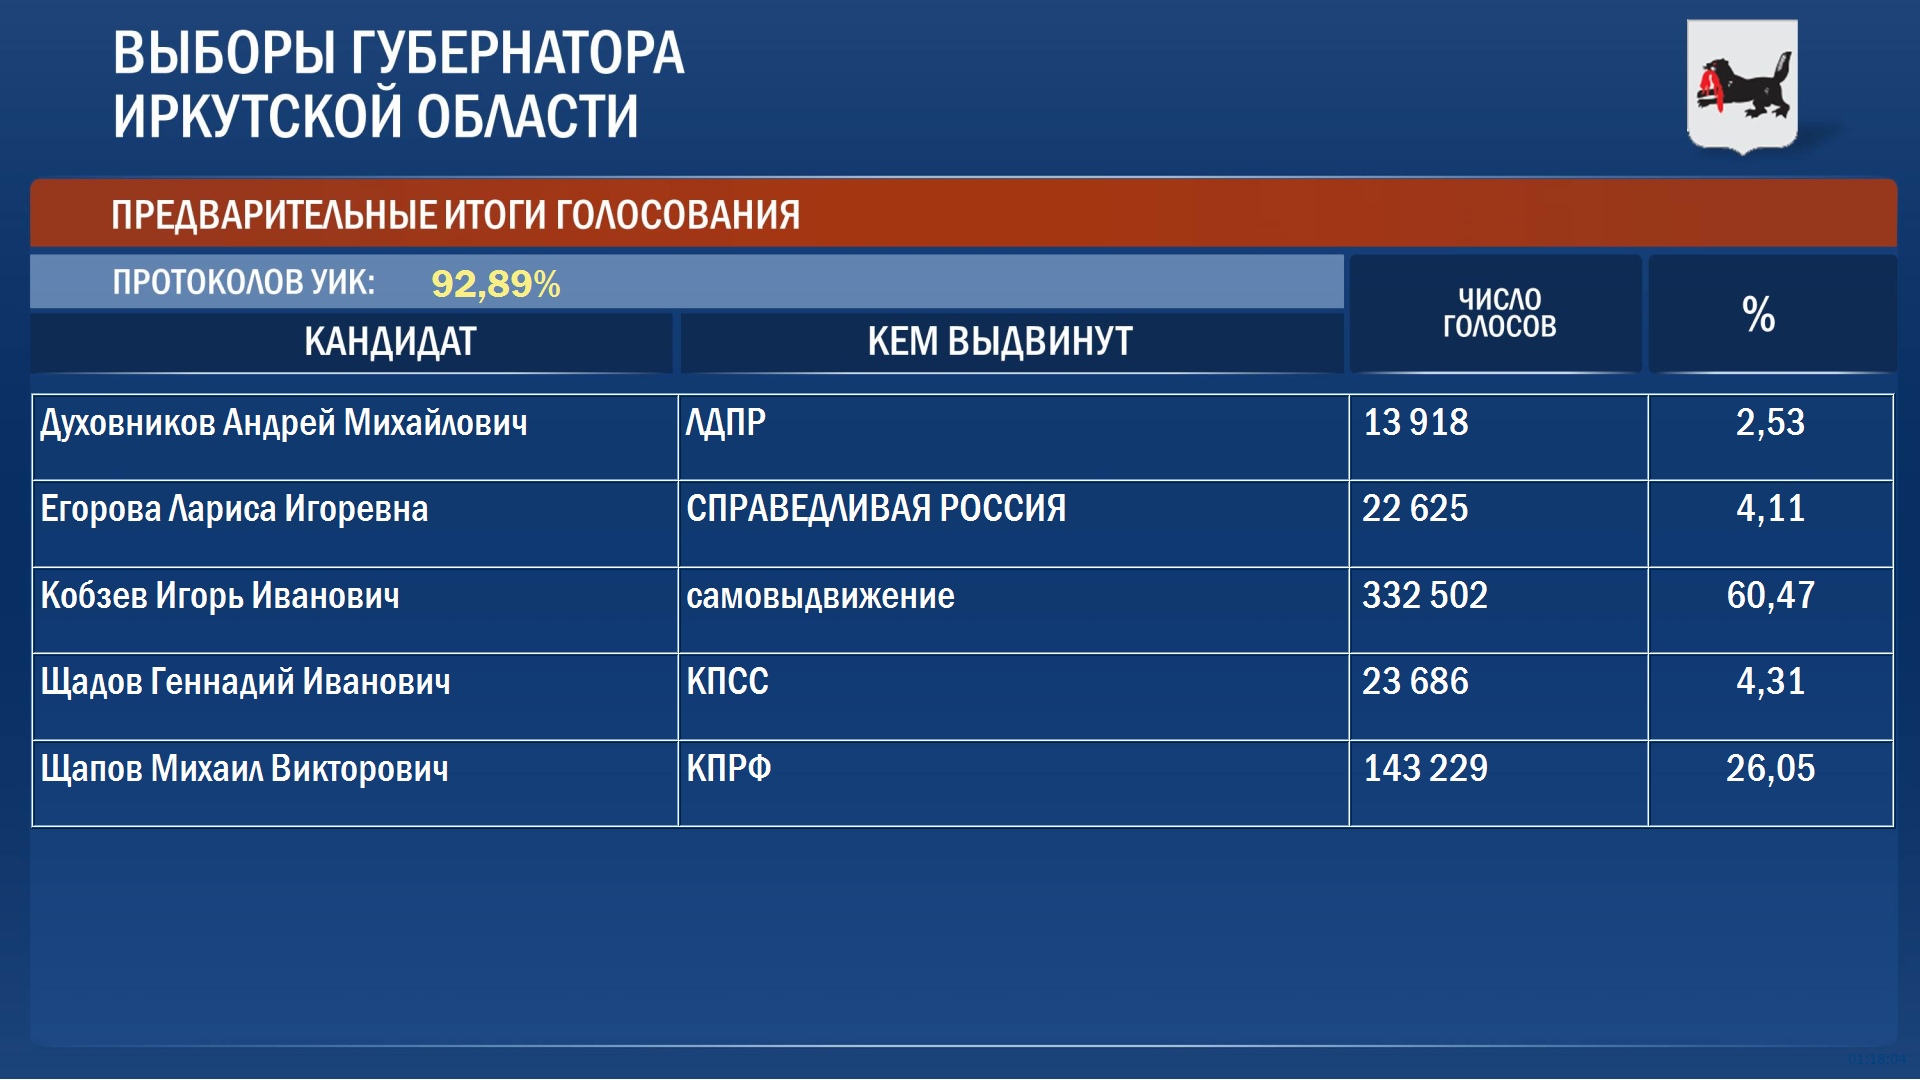 По итогам обработки 92 % протоколов Игорь Кобзев набирает 60% голосов избирателей